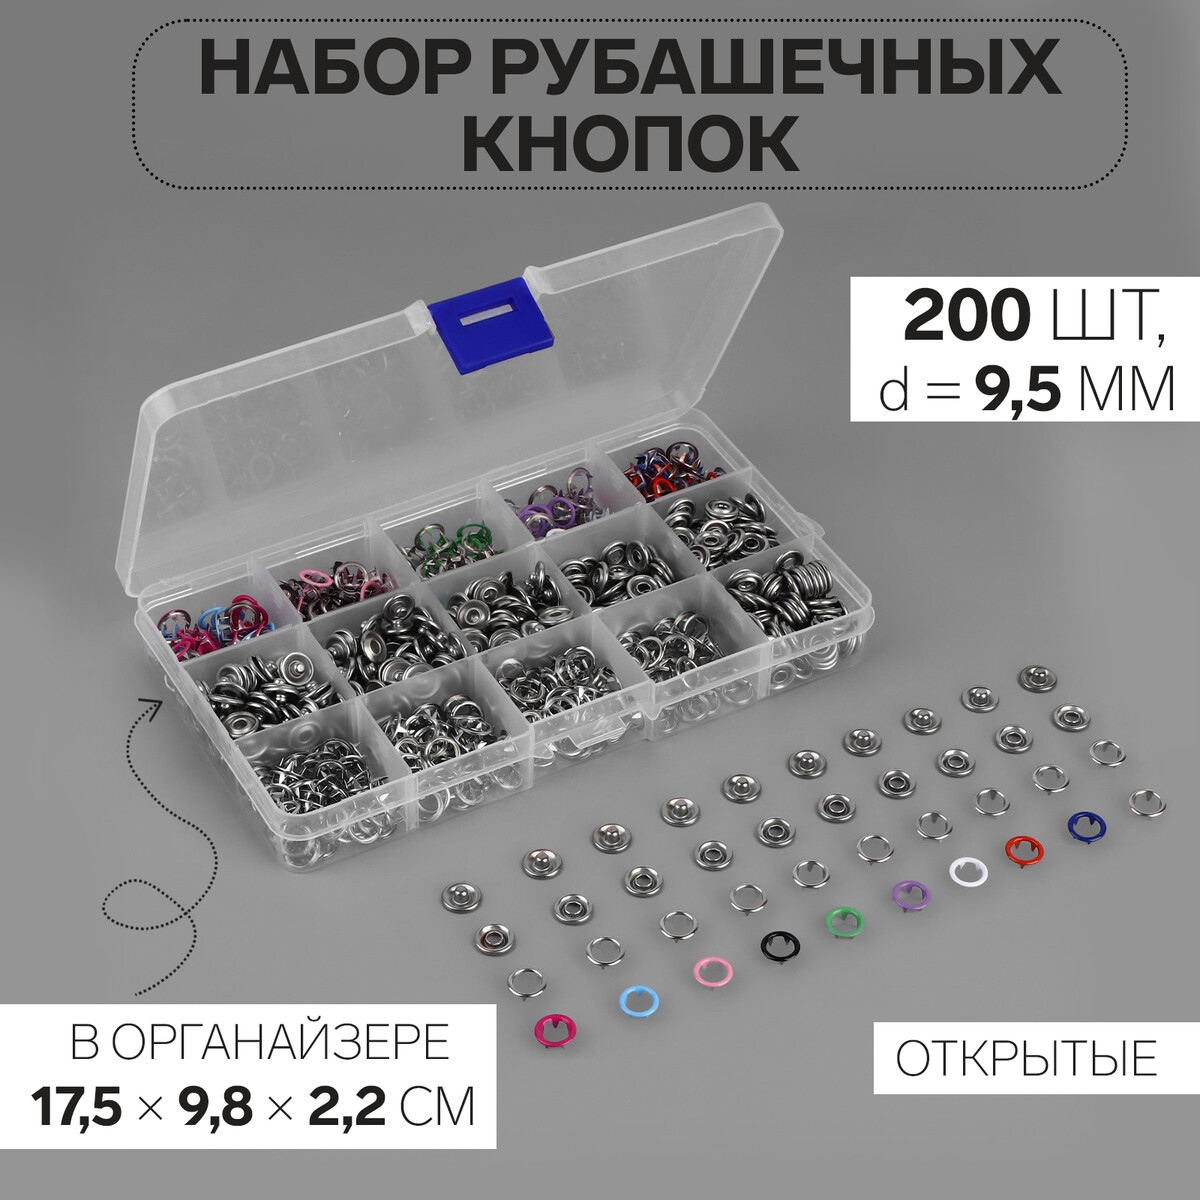 Кнопки рубашечные, открытые, в органайзере, d = 9,5 мм, 200 шт, цвет разноцветный